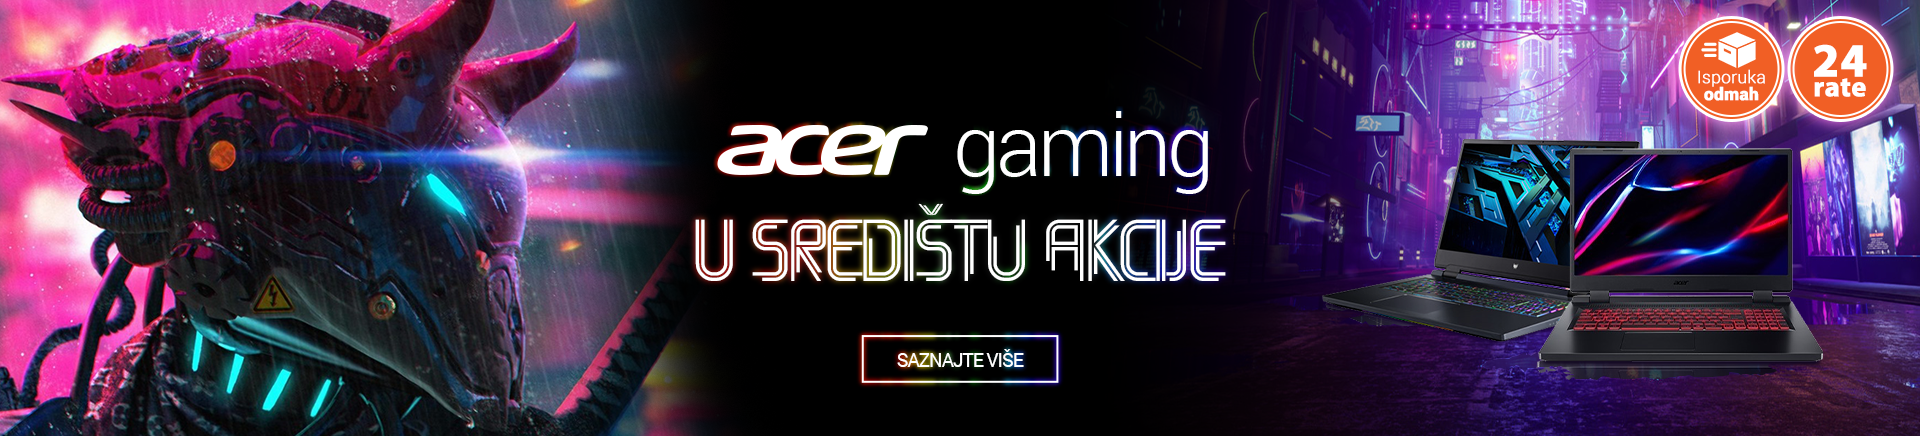 HR Acer Gaming središte akcije MOBILE 380 X 436.png